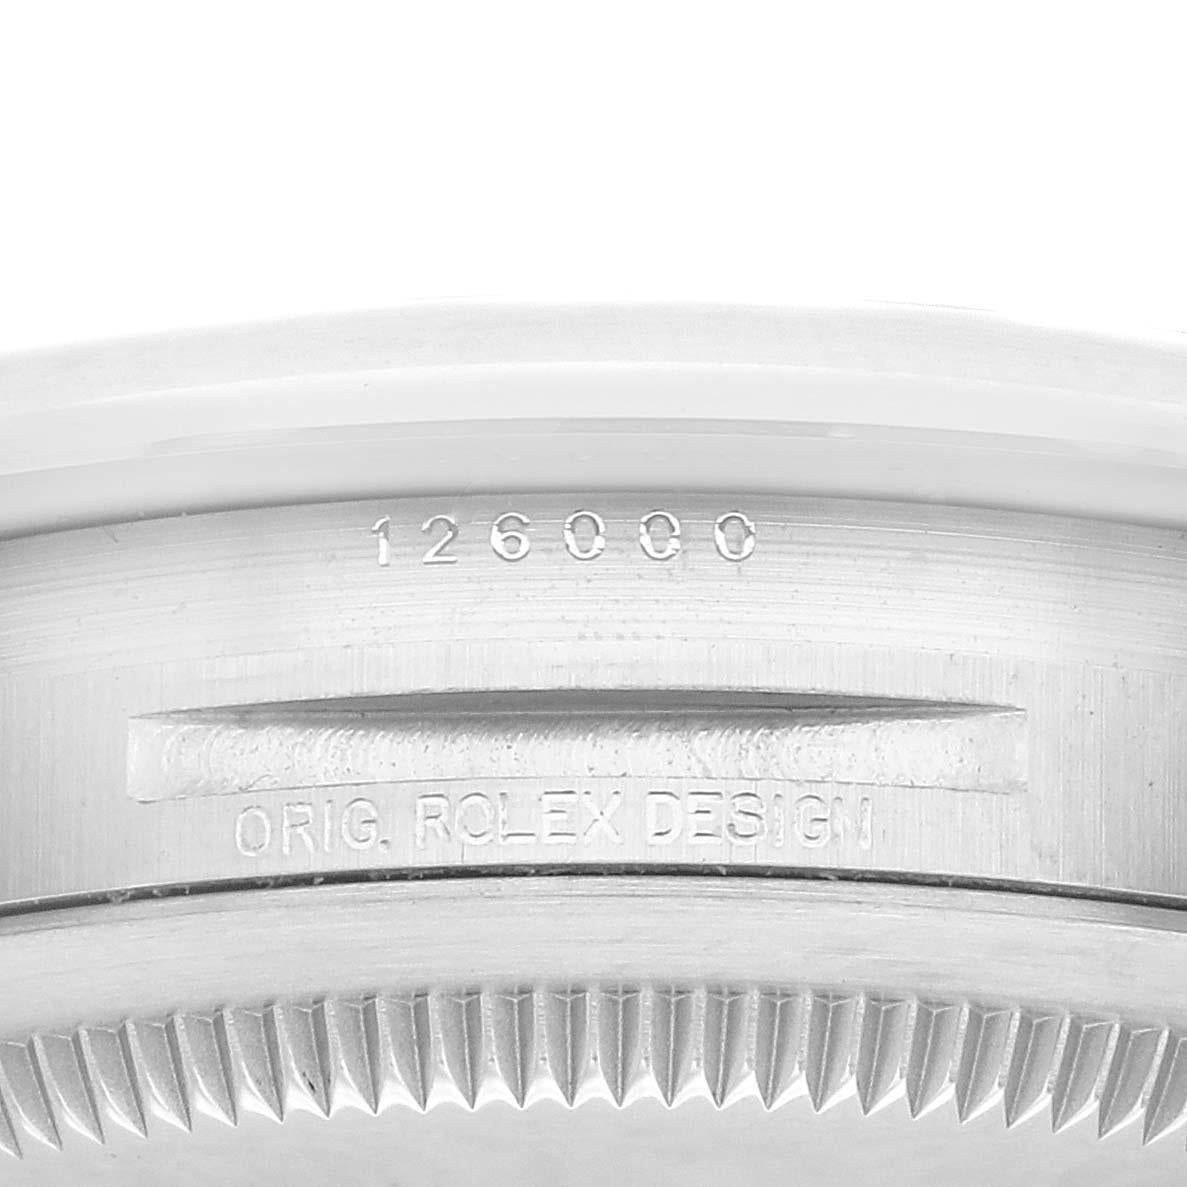 Rolex Oyster Perpetual Schwarzes Zifferblatt Stahl Herrenuhr 126000 Box Card. Offiziell zertifiziertes Chronometerwerk mit automatischem Aufzug. Gehäuse aus Edelstahl mit einem Durchmesser von 36.0 mm. Rolex Logo auf einer Krone. Glatte, gewölbte